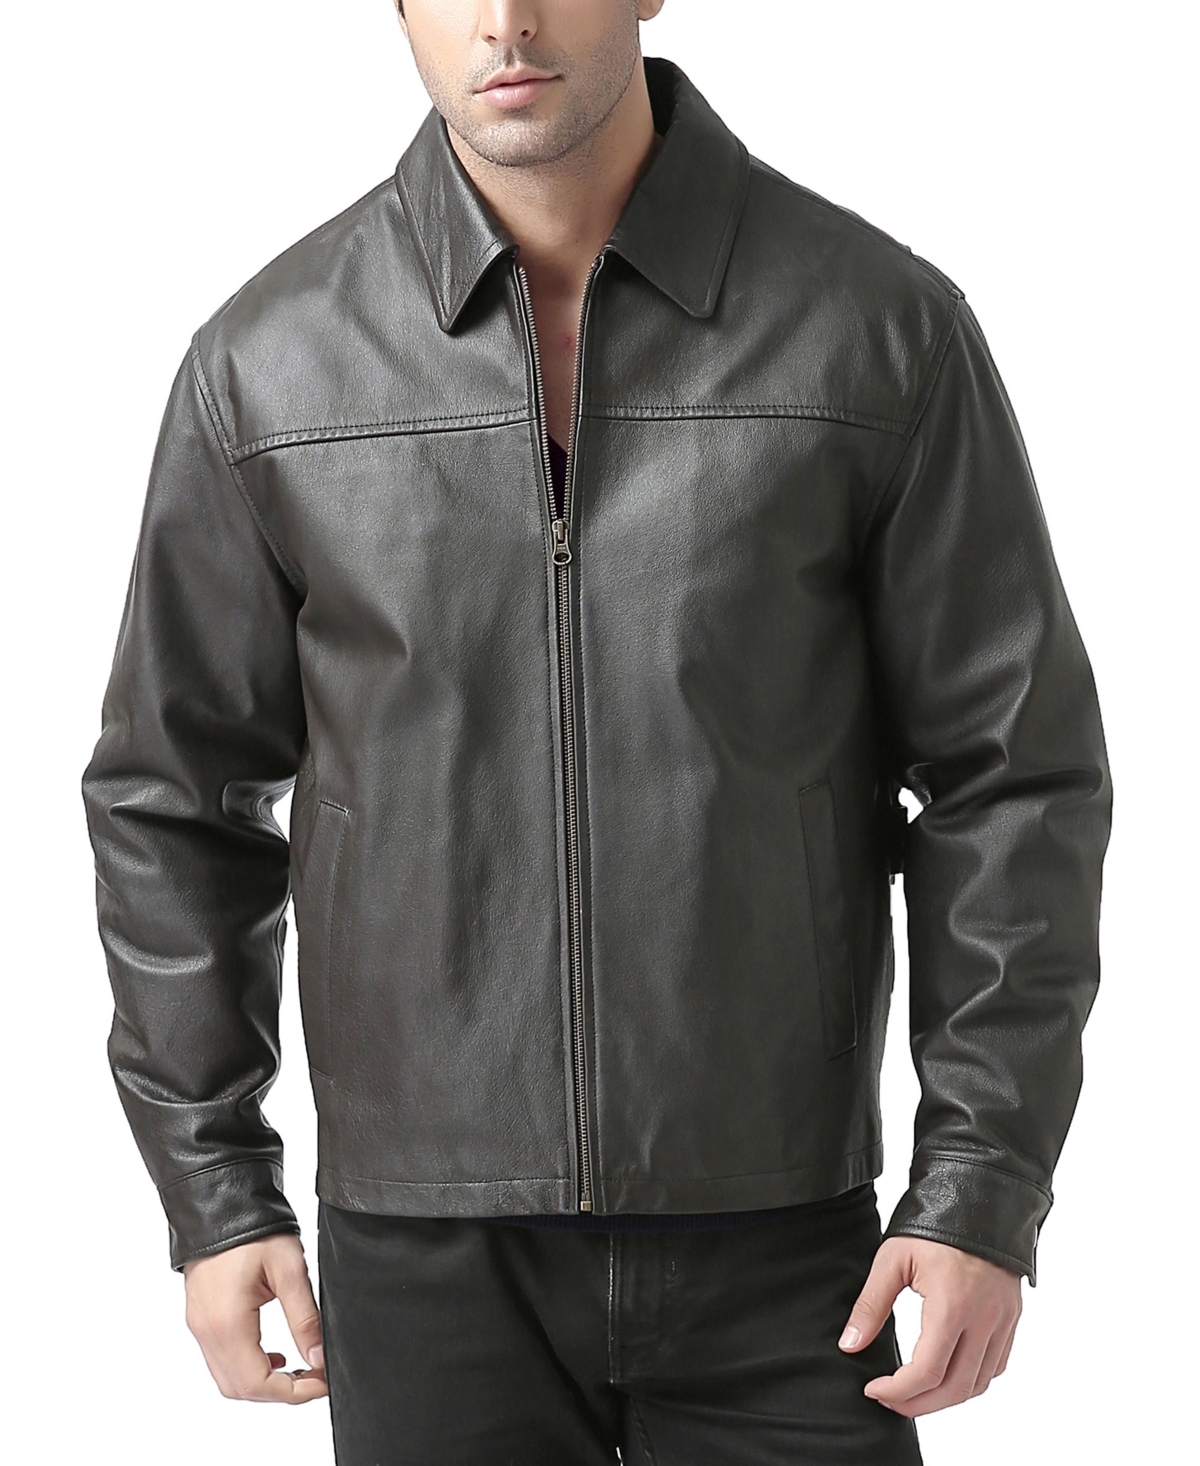 Men Greg Open Bottom Zip Front Leather Jacket - Brown